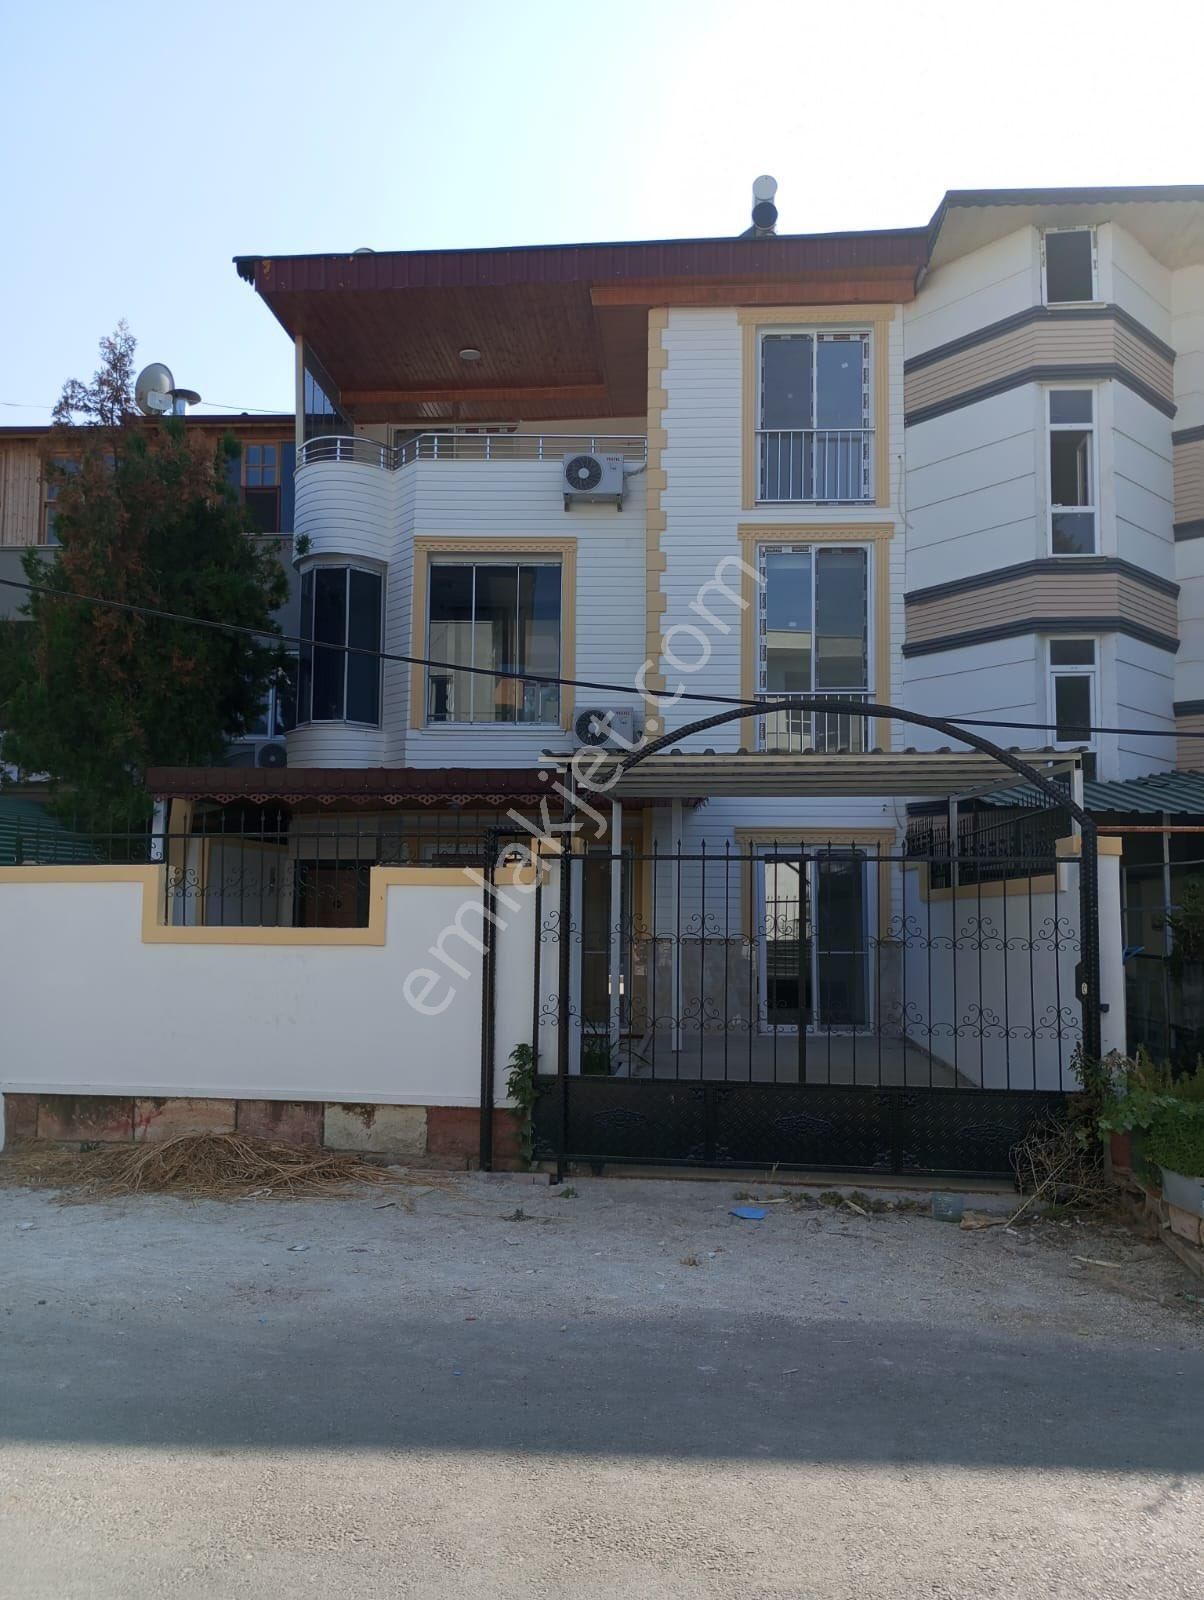 Erdemli Kargıpınarı Satılık Villa Erdemli Kargıpınarı Liparis 7 Sitesi Karşısı 350 m Arsa İçerisinde 170 m2 Havuzlu Villa